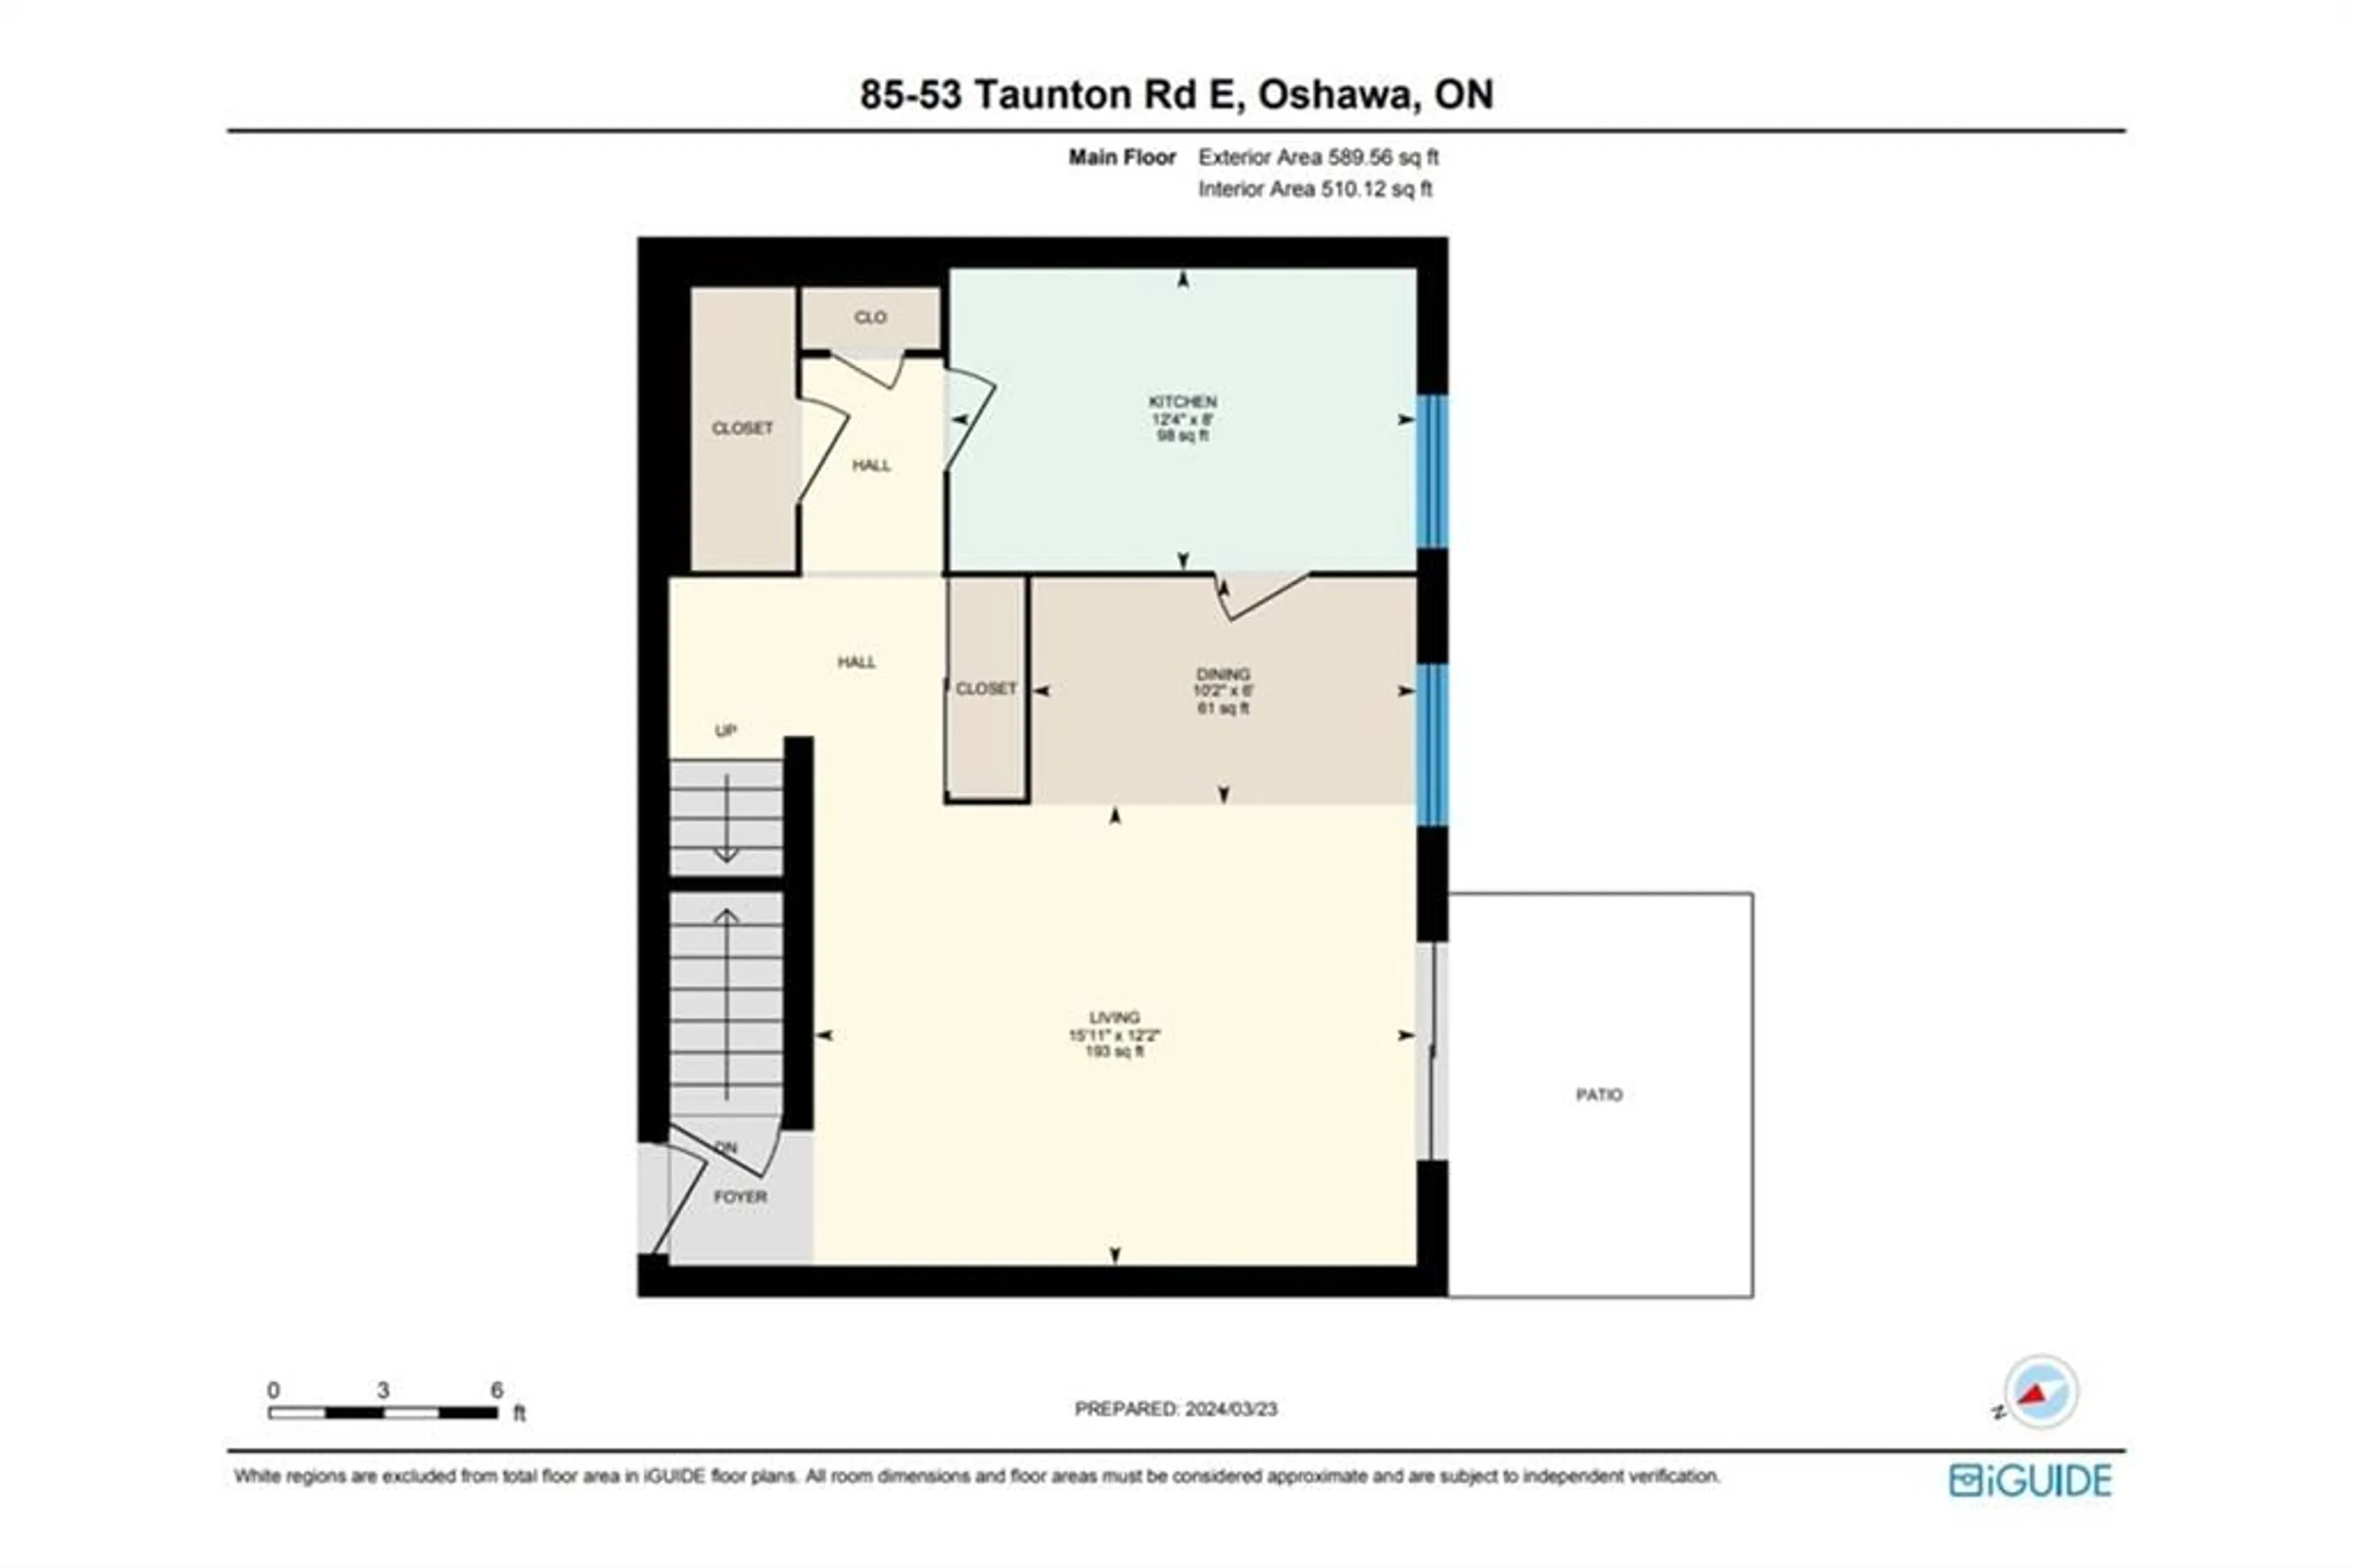 Floor plan for 53 Taunton Rd #85, Oshawa Ontario L1G 3T6